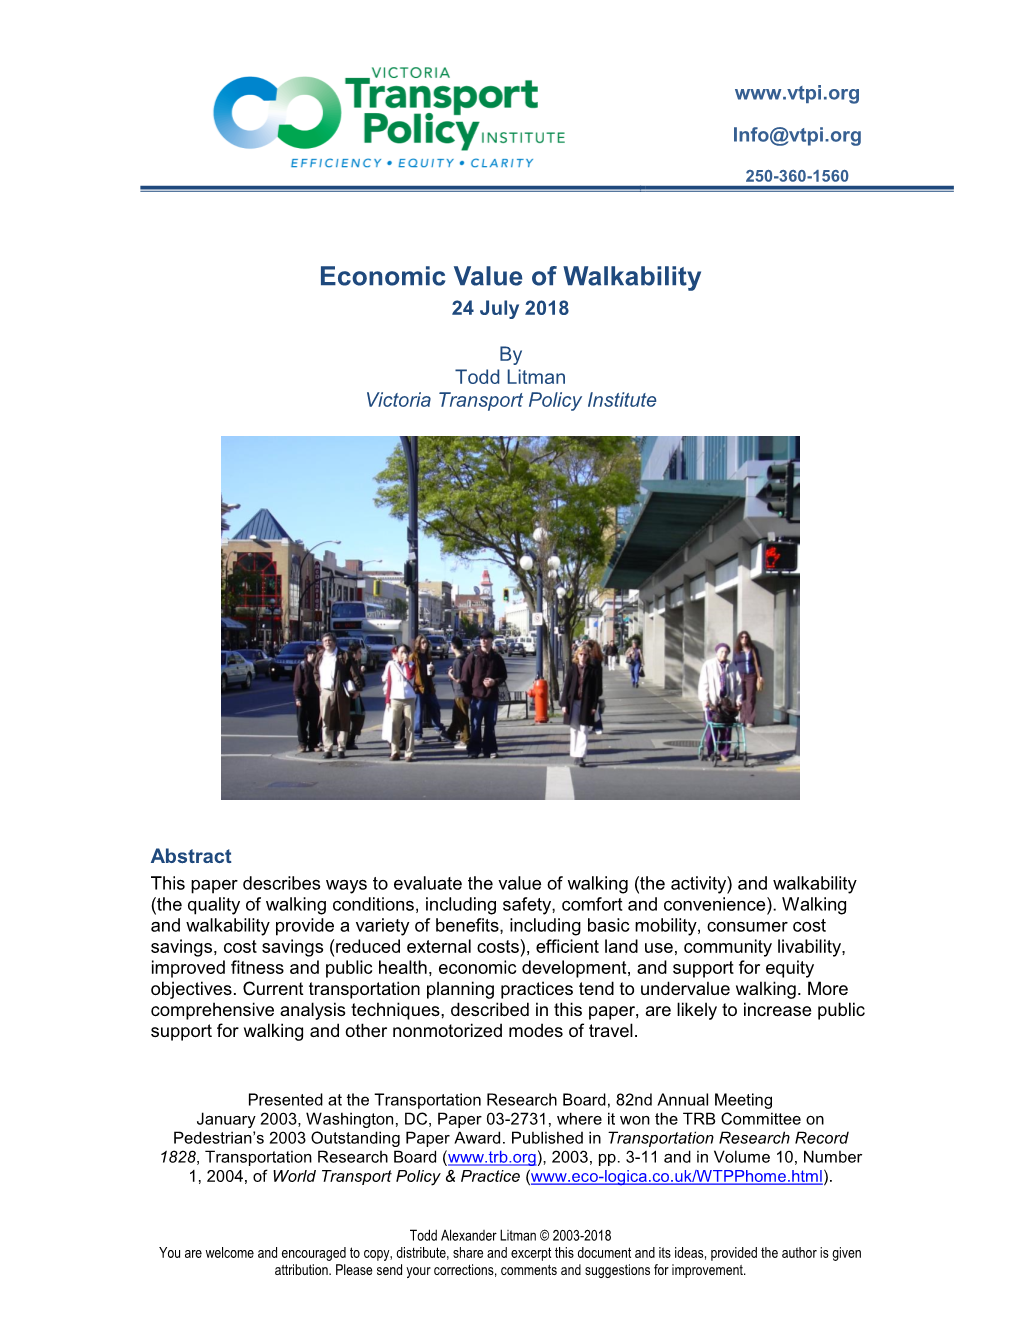 Economic Value of Walkability 24 July 2018